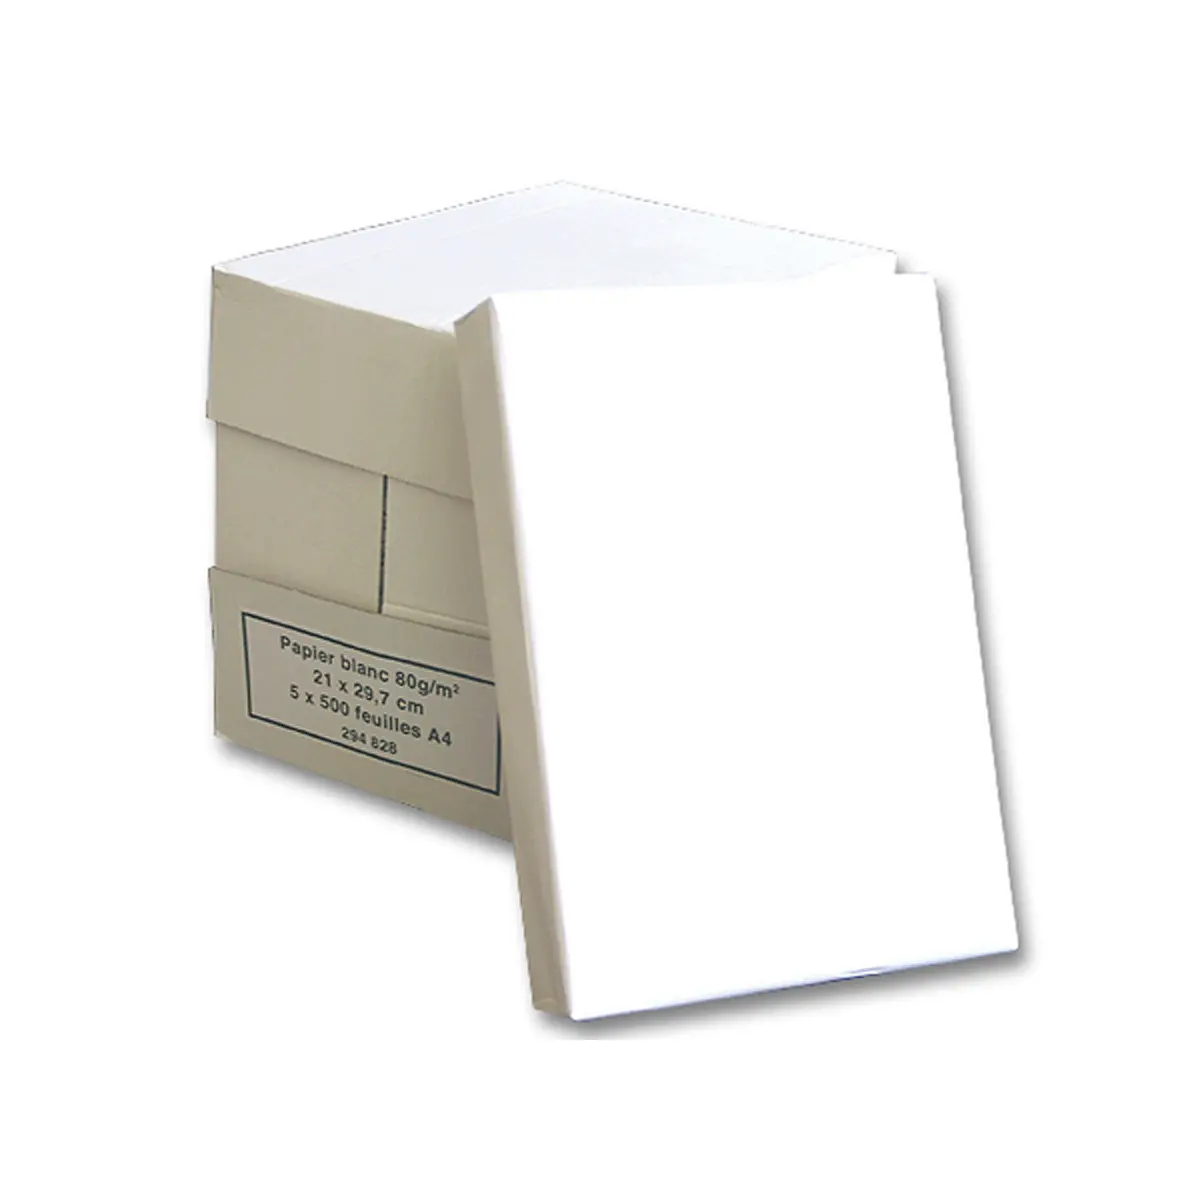 5 ramettes de 500 feuilles - Papier blanc - A4 - 75g - Économique photo du produit